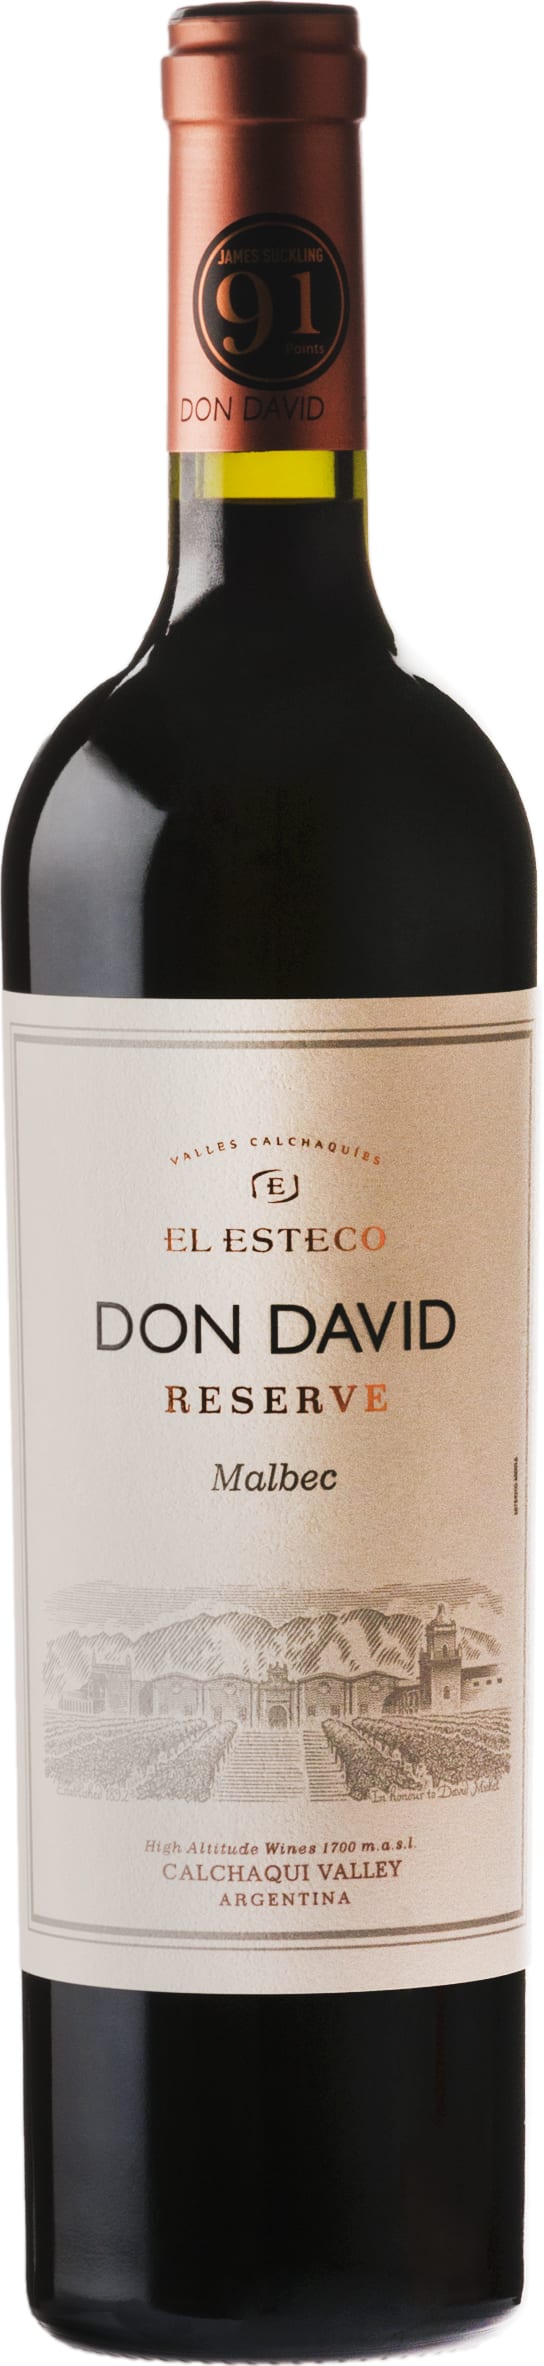 El Esteco Don David Malbec 2022 75cl - Buy El Esteco Wines from GREAT WINES DIRECT wine shop